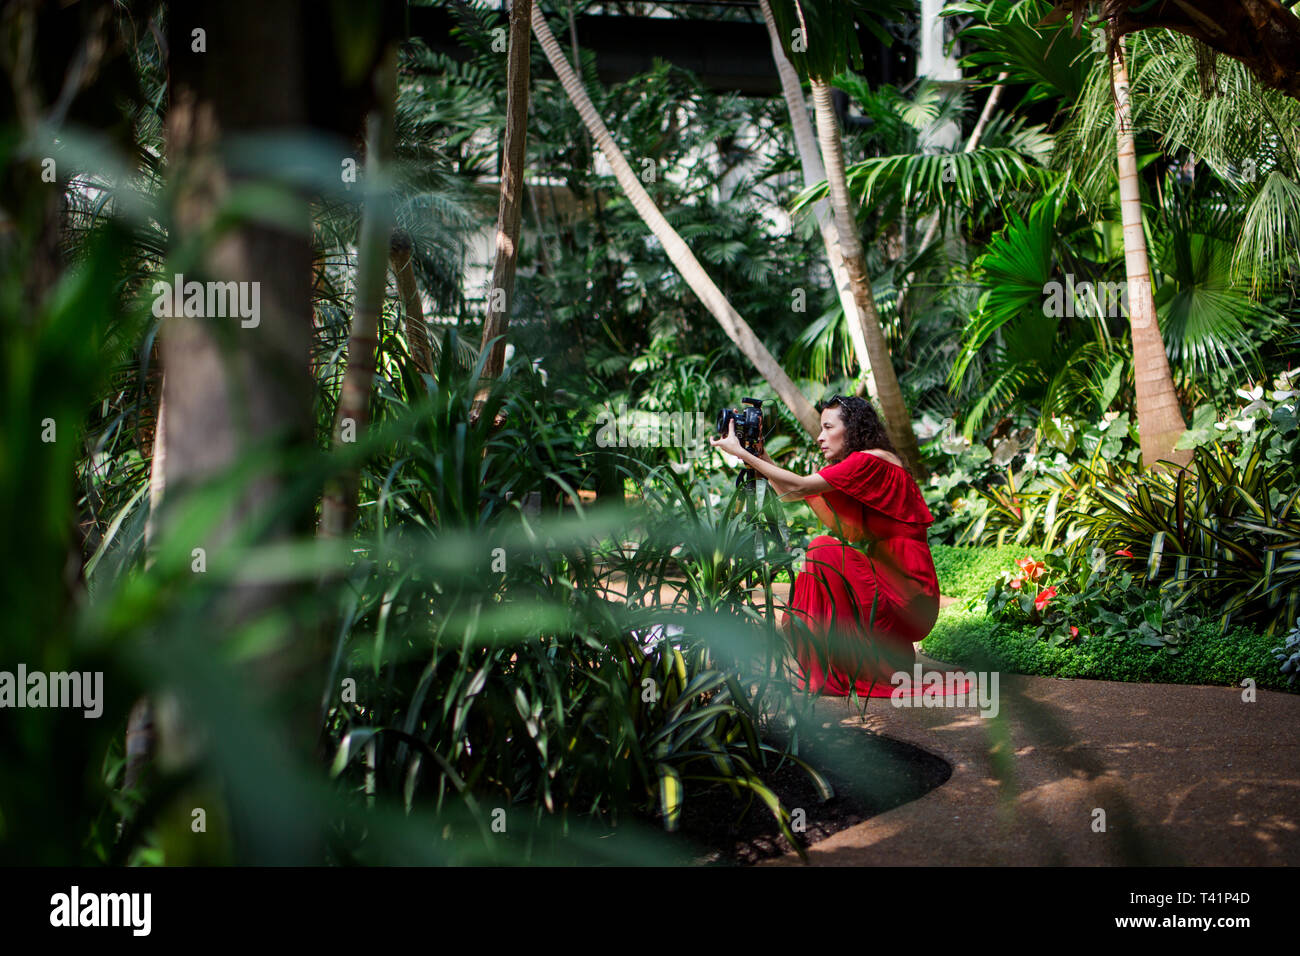 Eine Frau Fotograf in einem hellen roten Kleid kniet in einem üppigen Garten Stockfoto